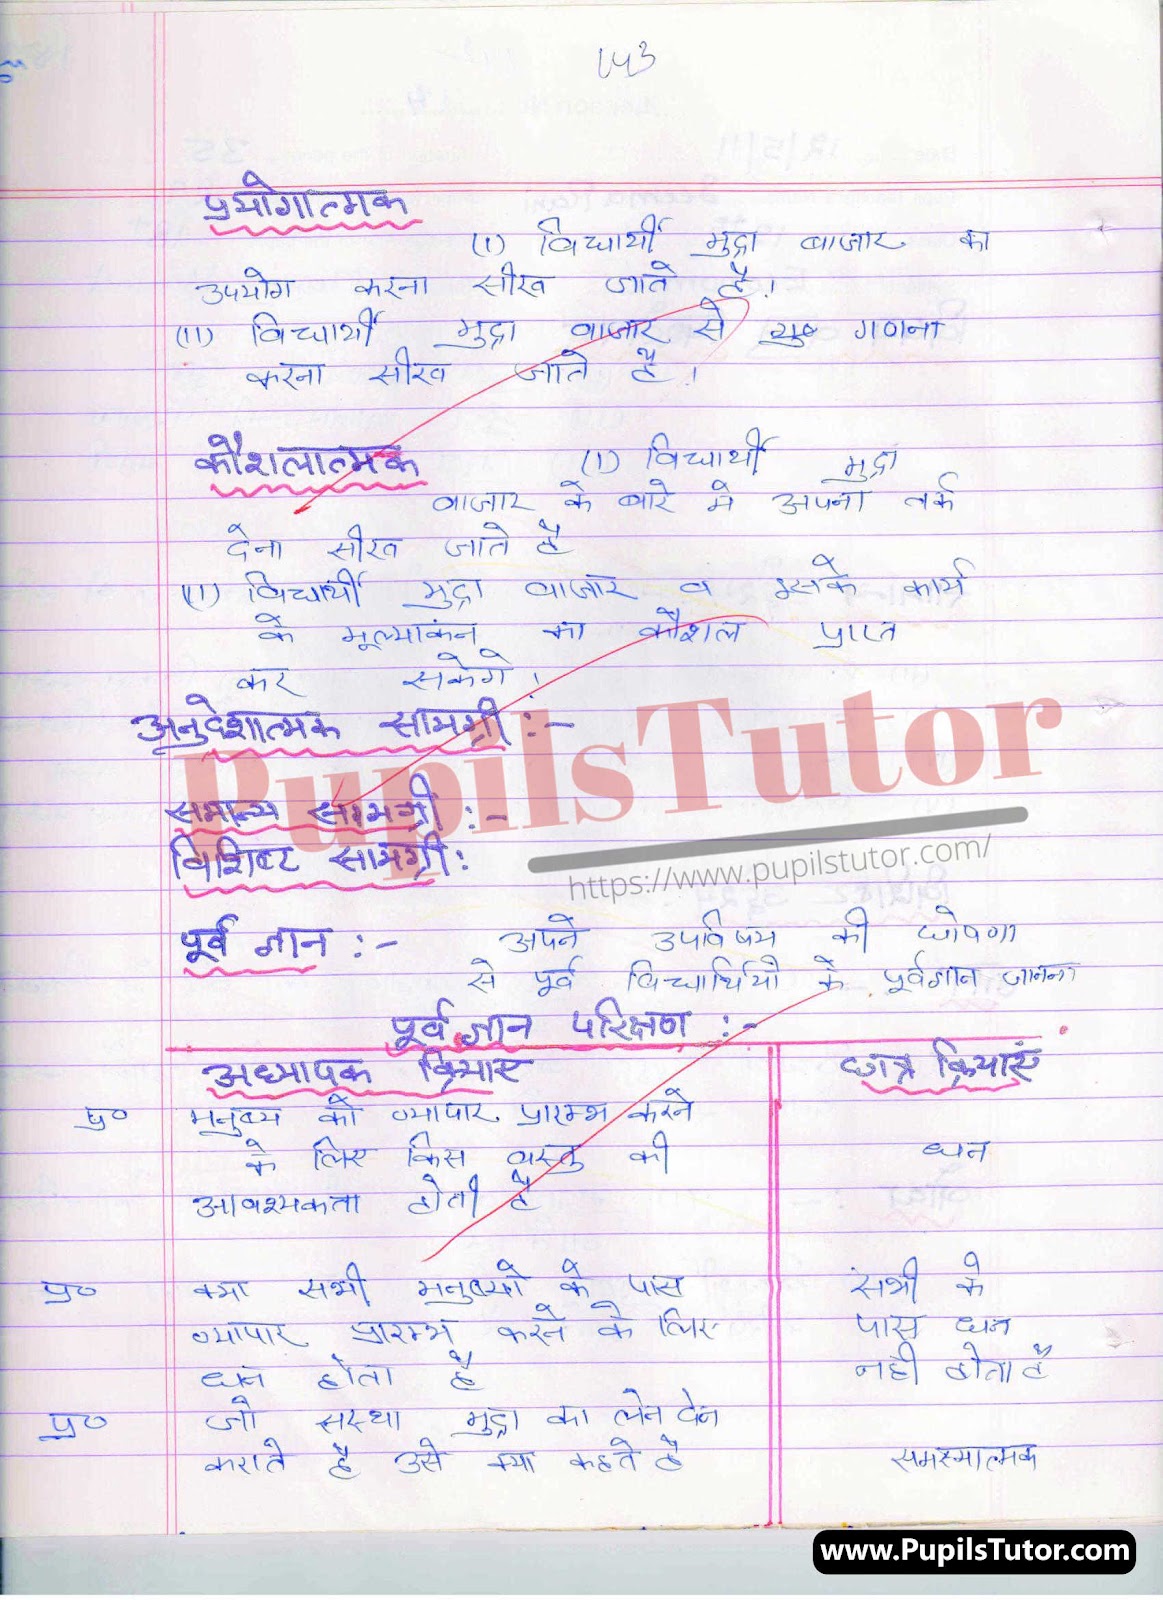 School Teaching And Mega Teaching Skill Mudra Bazar Lesson Plan For B.Ed And Deled In Hindi Free Download PDF And PPT (Power Point Presentation And Slides) | बीएड और डीएलएड के लिए स्कूल शिक्षण और मेगा शिक्षण कौशल पर मुद्रा बाजार कक्षा 12 के लेसन प्लान की पीडीऍफ़ और पीपीटी फ्री में डाउनलोड करे| – (Page And PDF Number 2) – pupilstutor